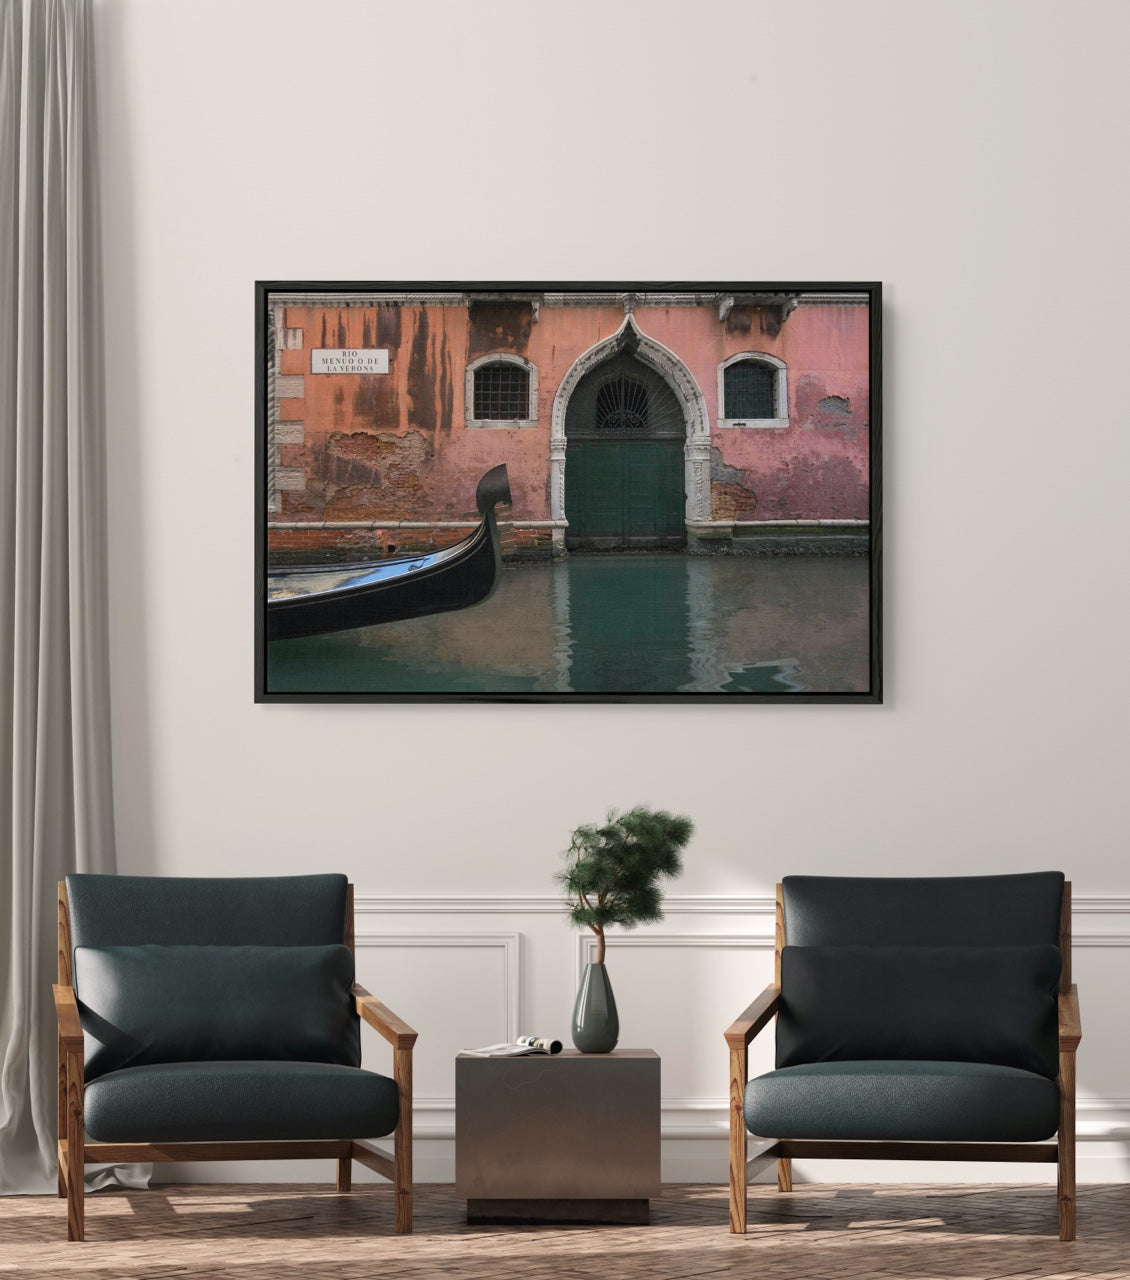 Wall art of a gondola in Venice Italy